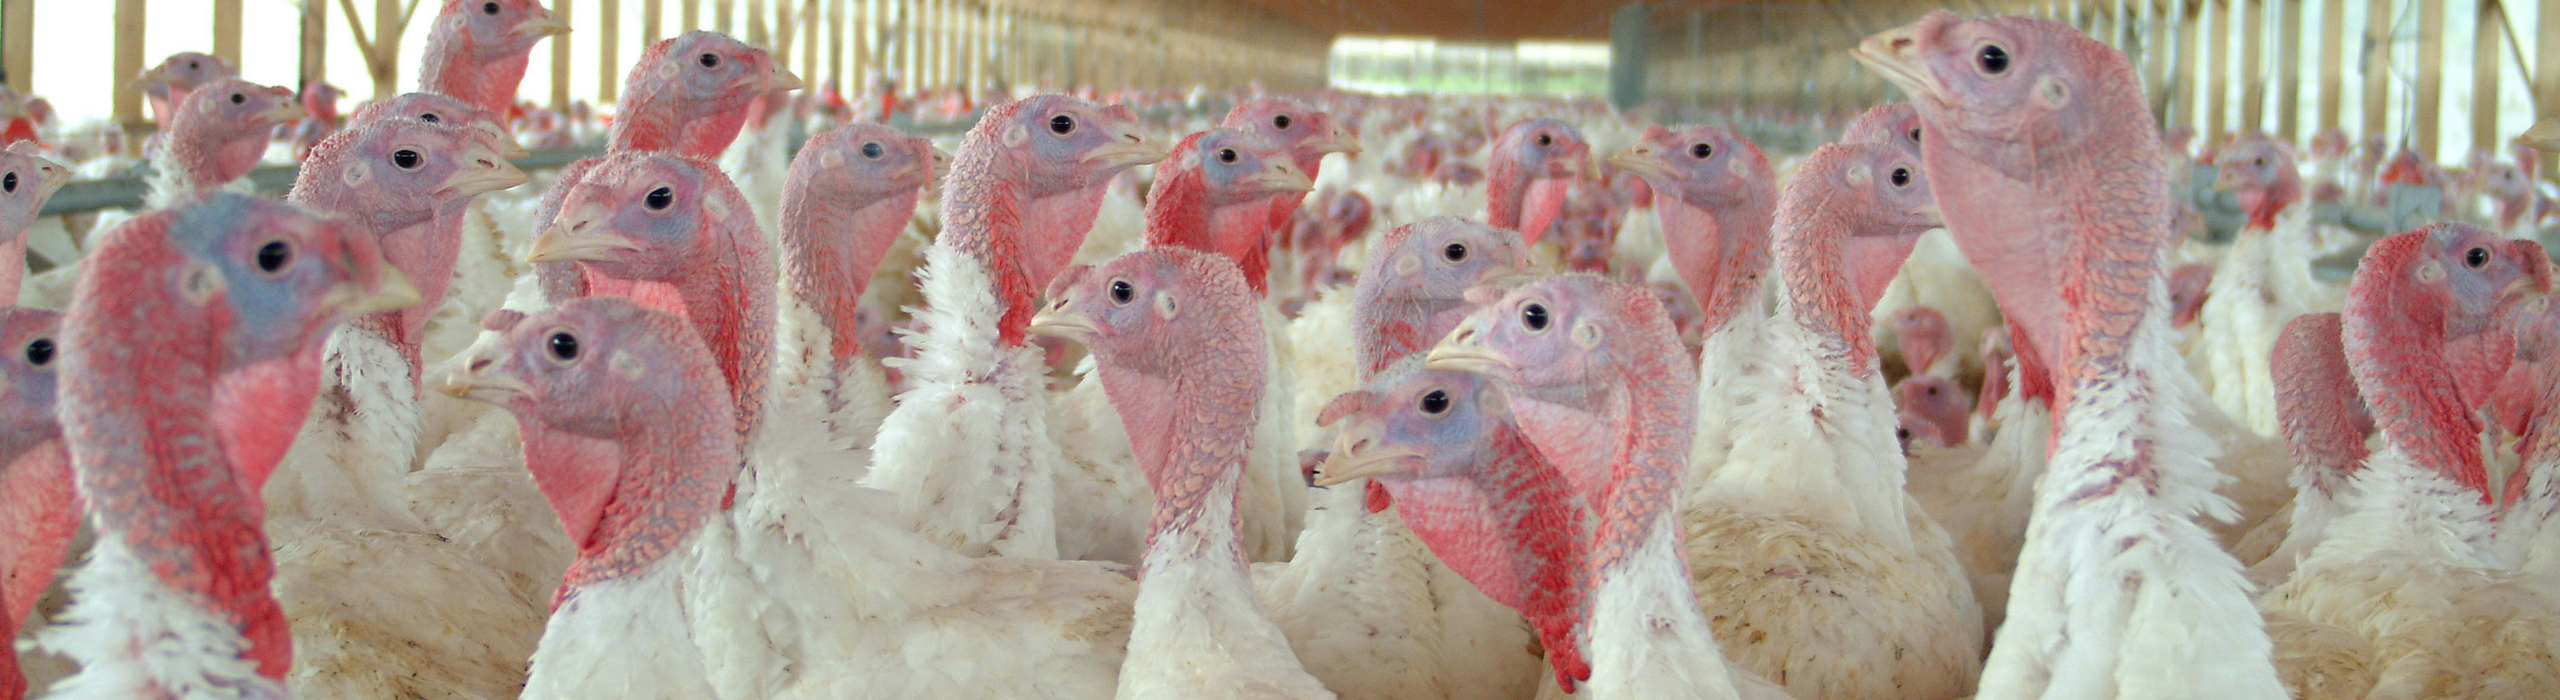 turkeys in barn